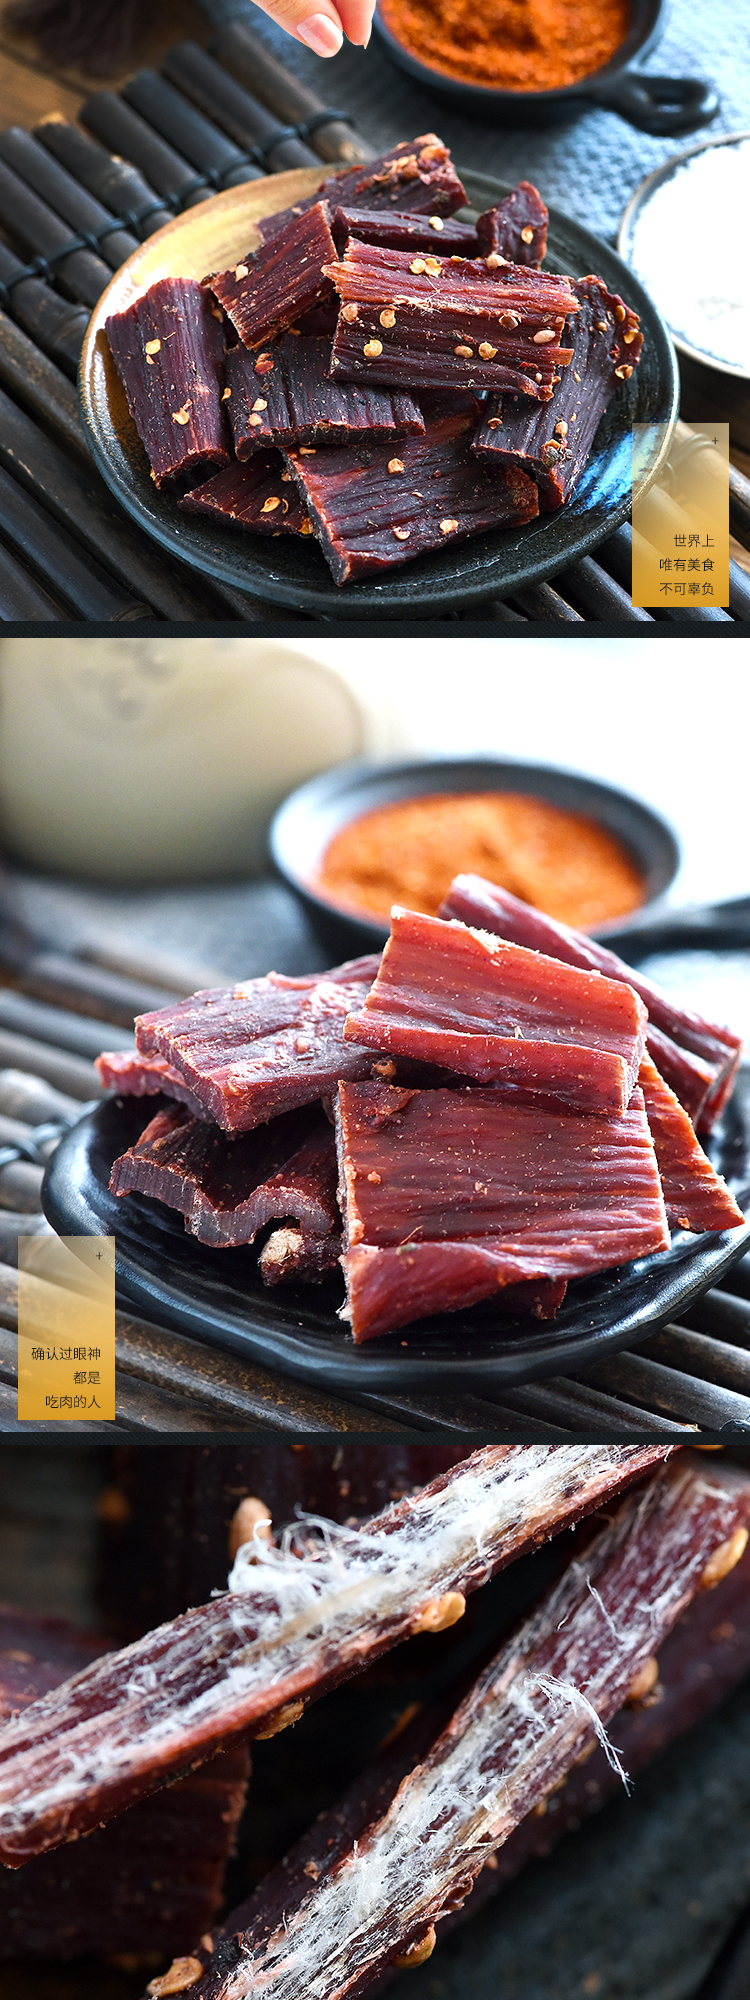 内蒙古香辣牛肉干图片